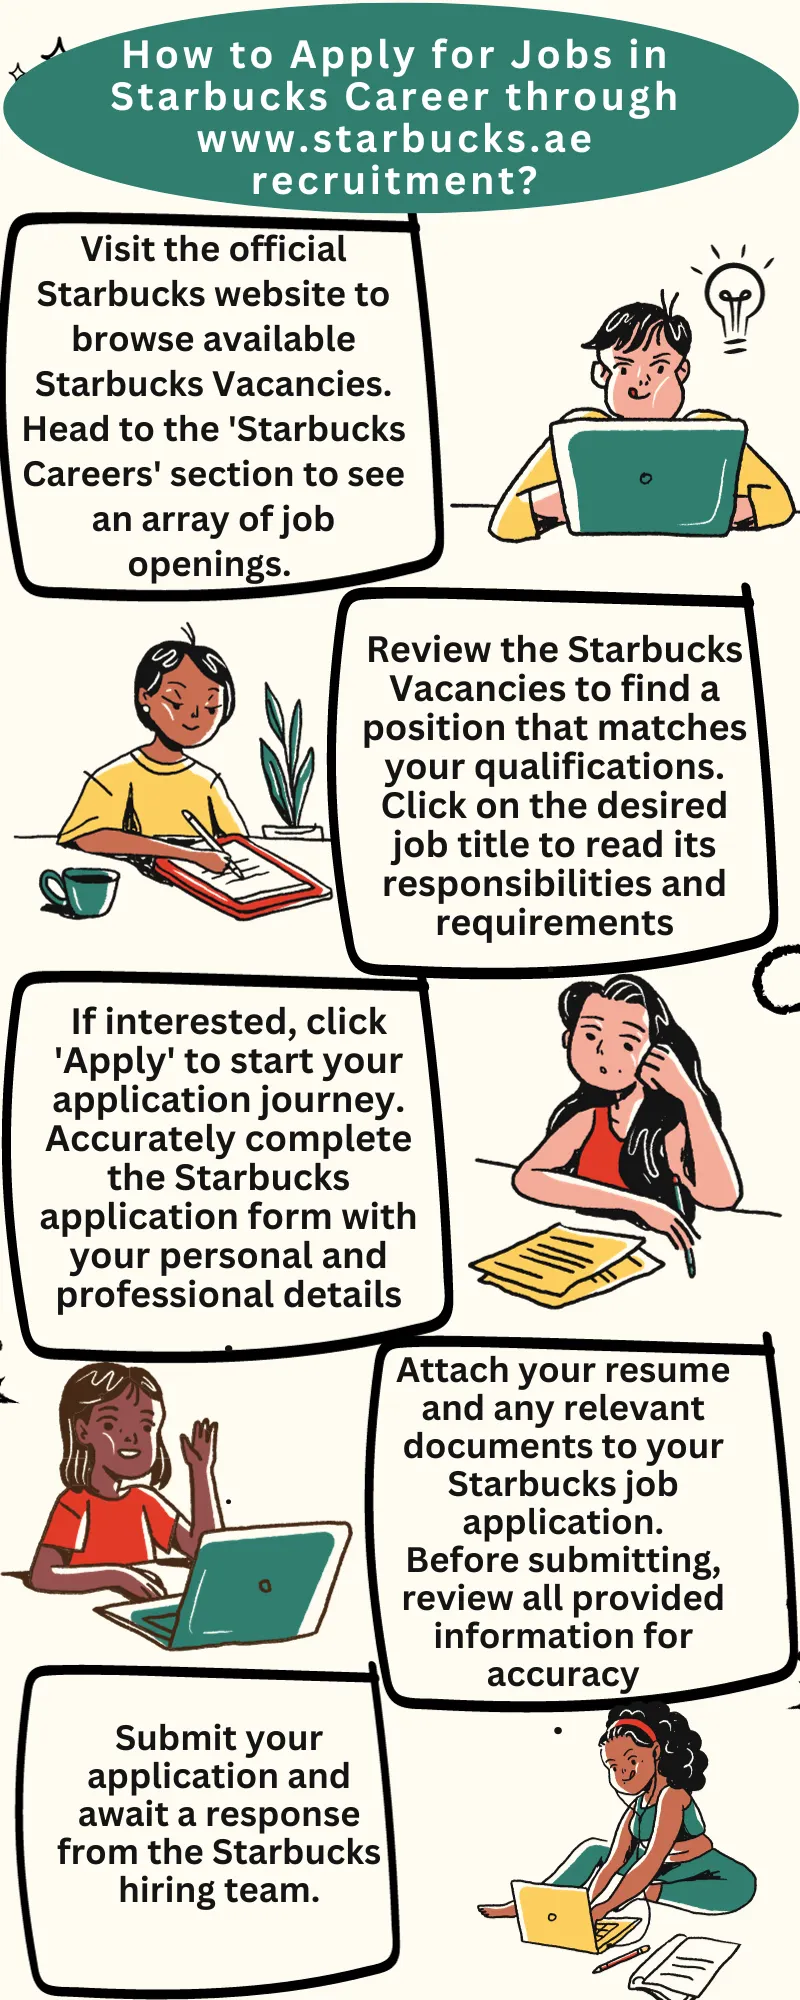 How to Apply for Jobs in Starbucks Career through www.starbucks.ae recruitment?